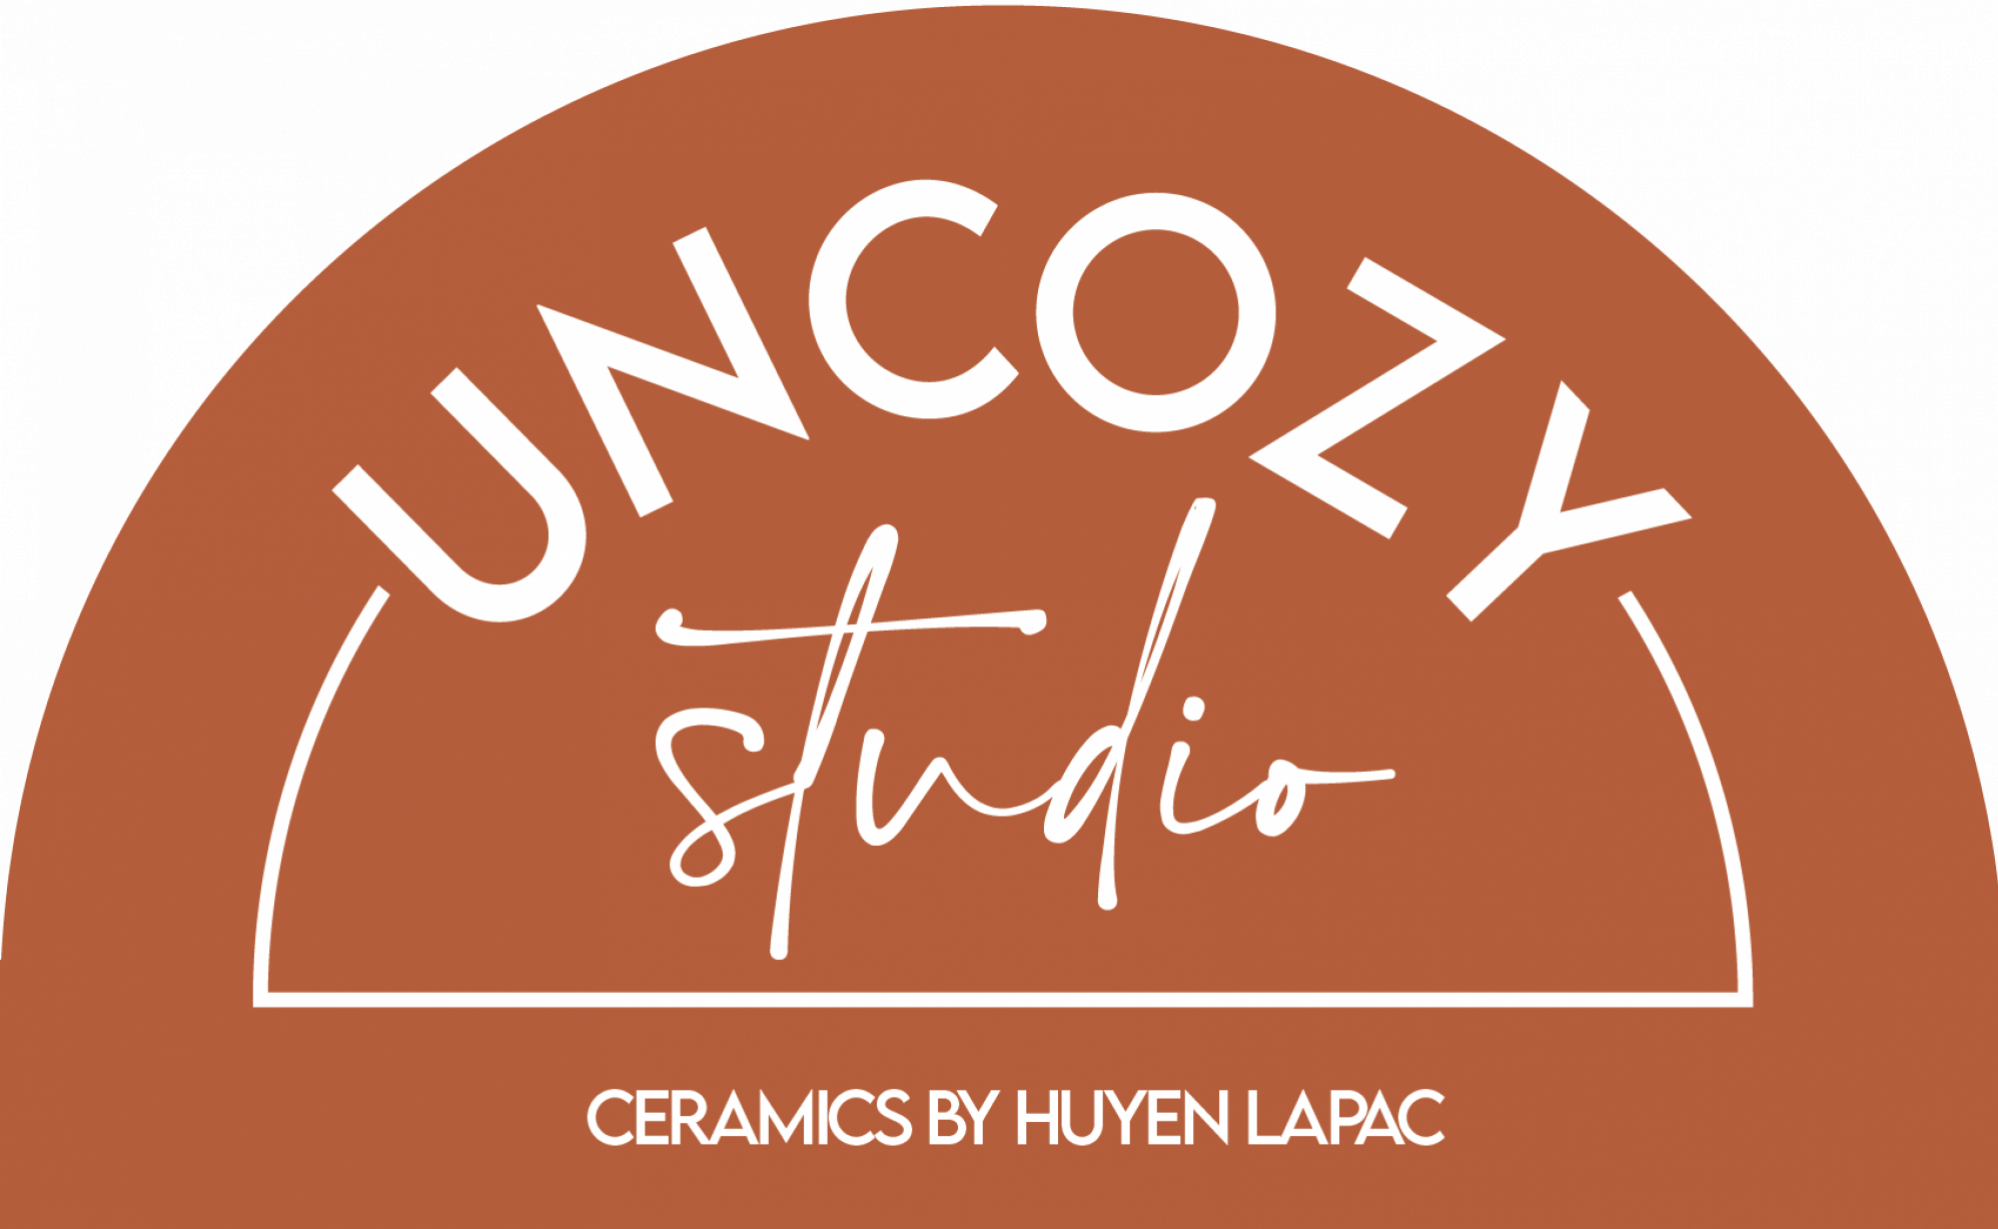 Uncozy Studio